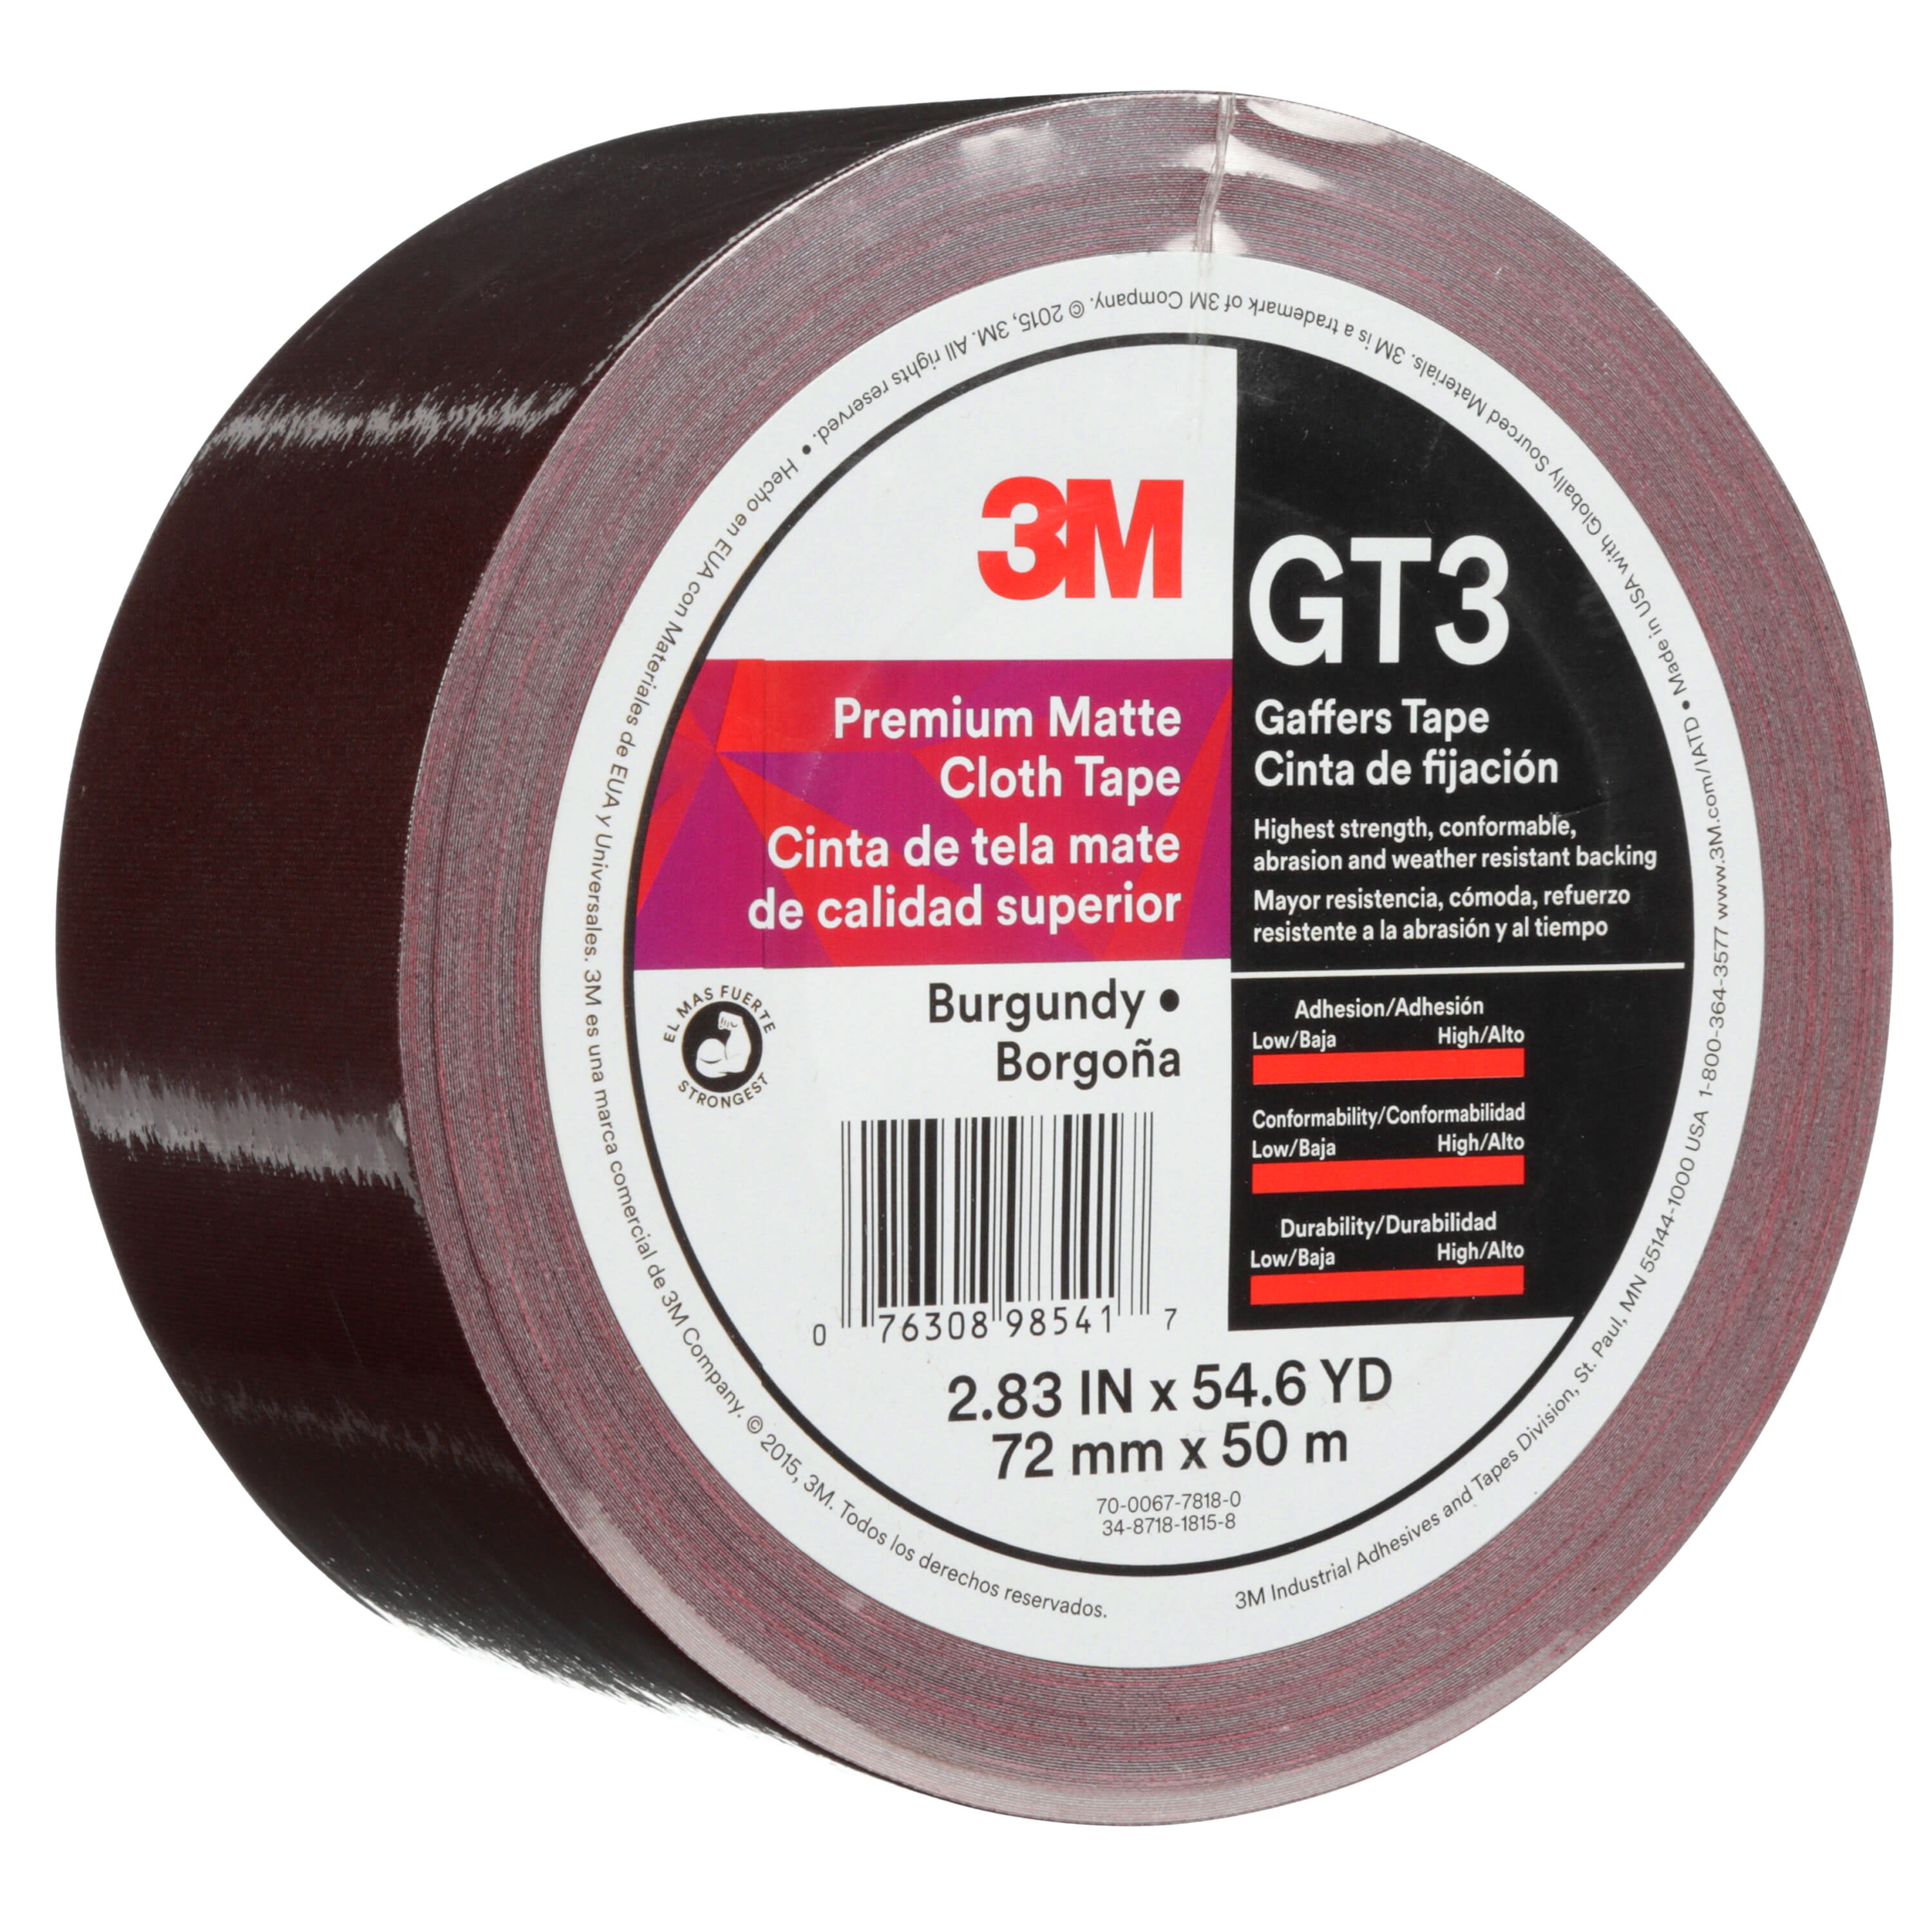 3M™ Premium Matte Cloth (Gaffers) Tape GT3, Burgundy, 72 mm x 50 m, 11
mil, 16 per case